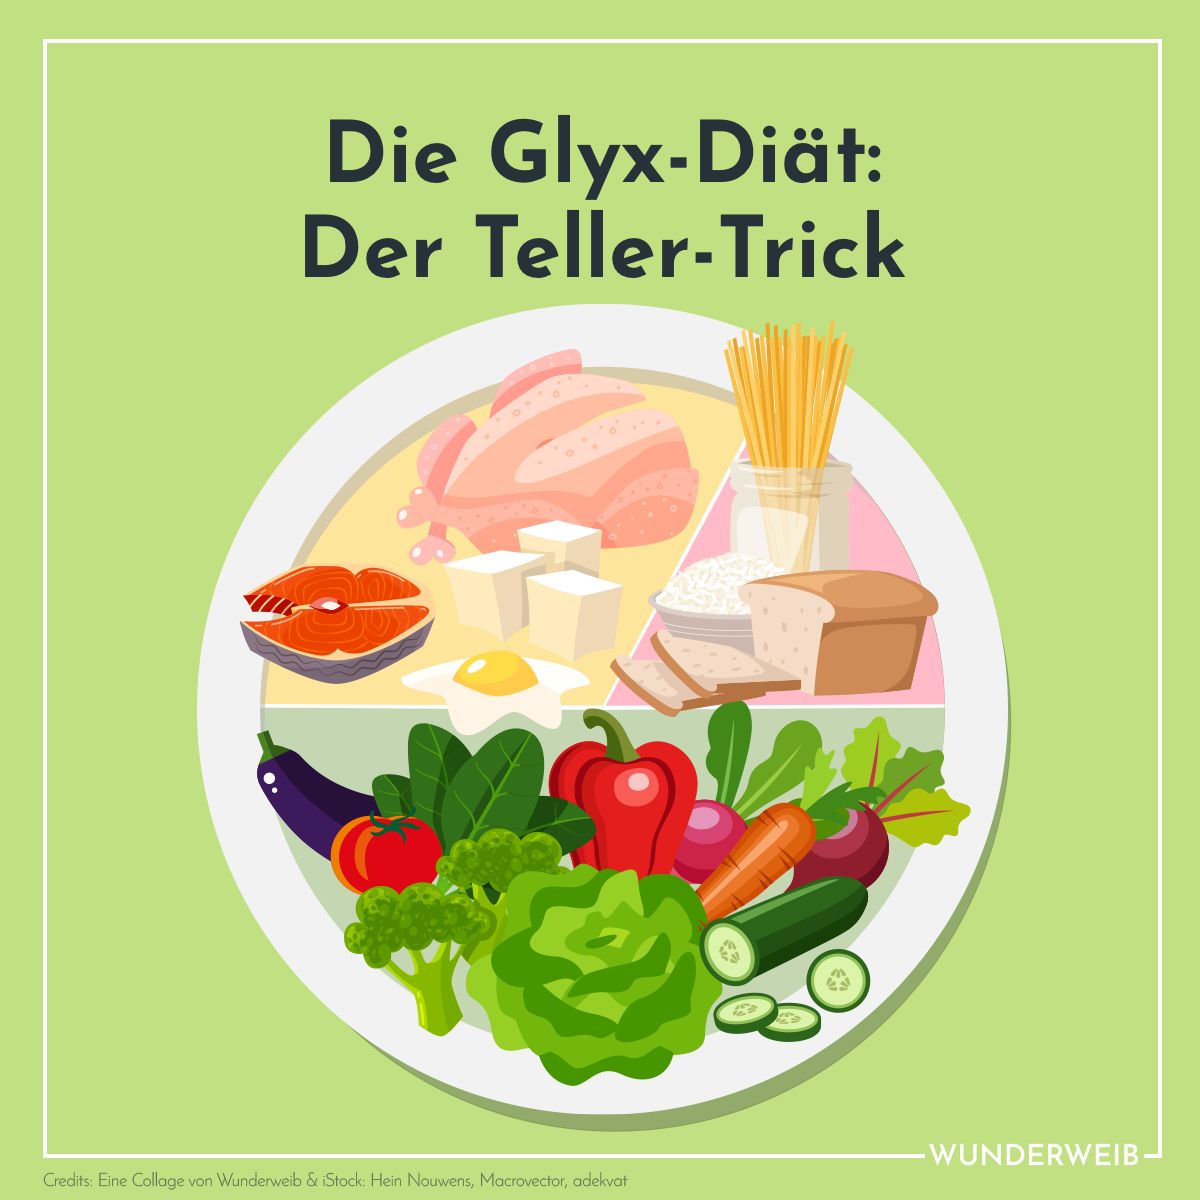 Die GLYX Diät: Mit all you can eat zur Wunschfigur